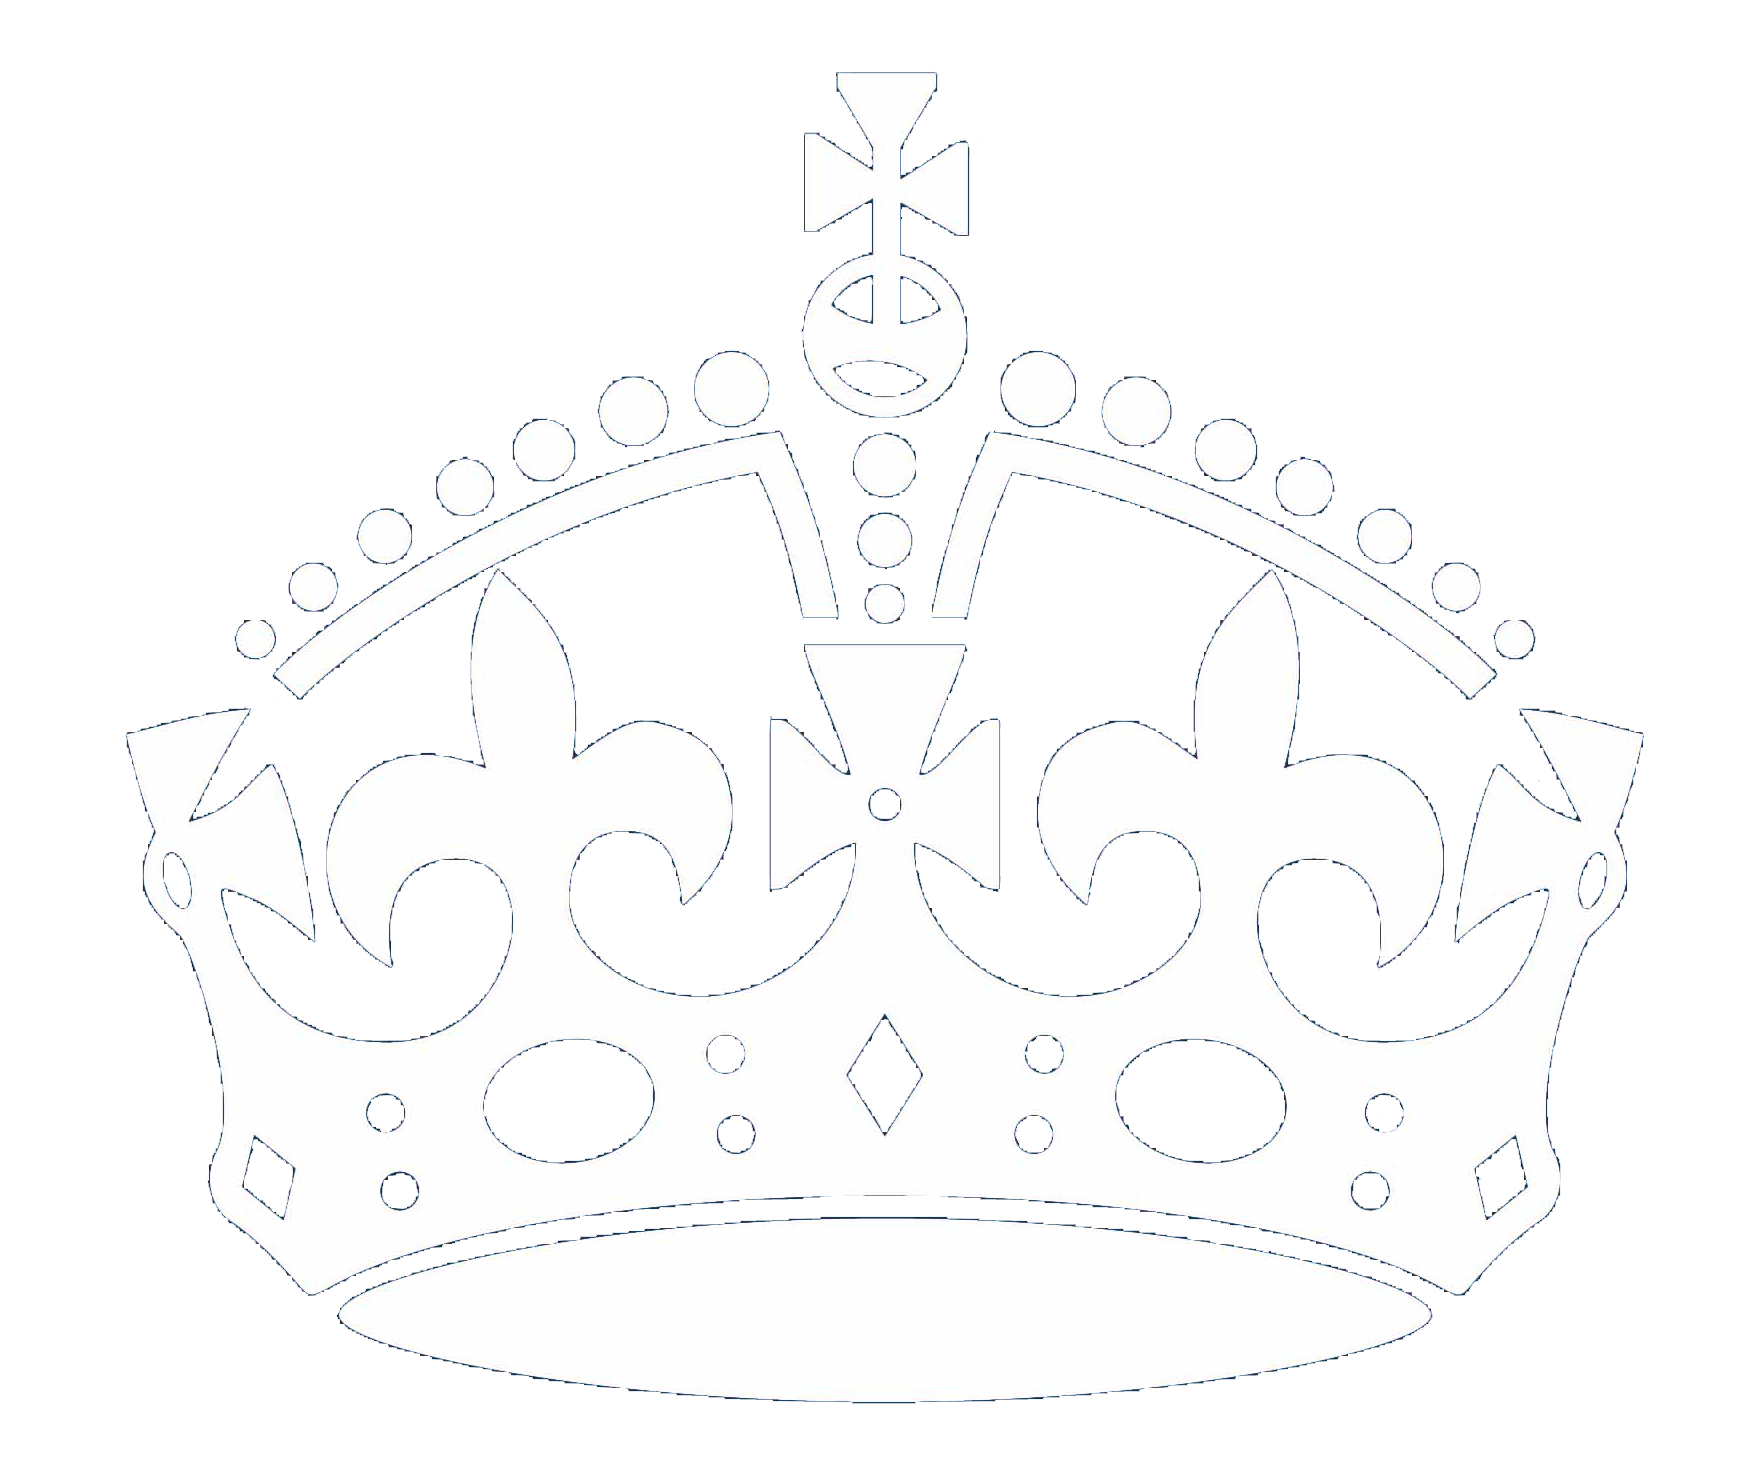 keep calm crown symbol white